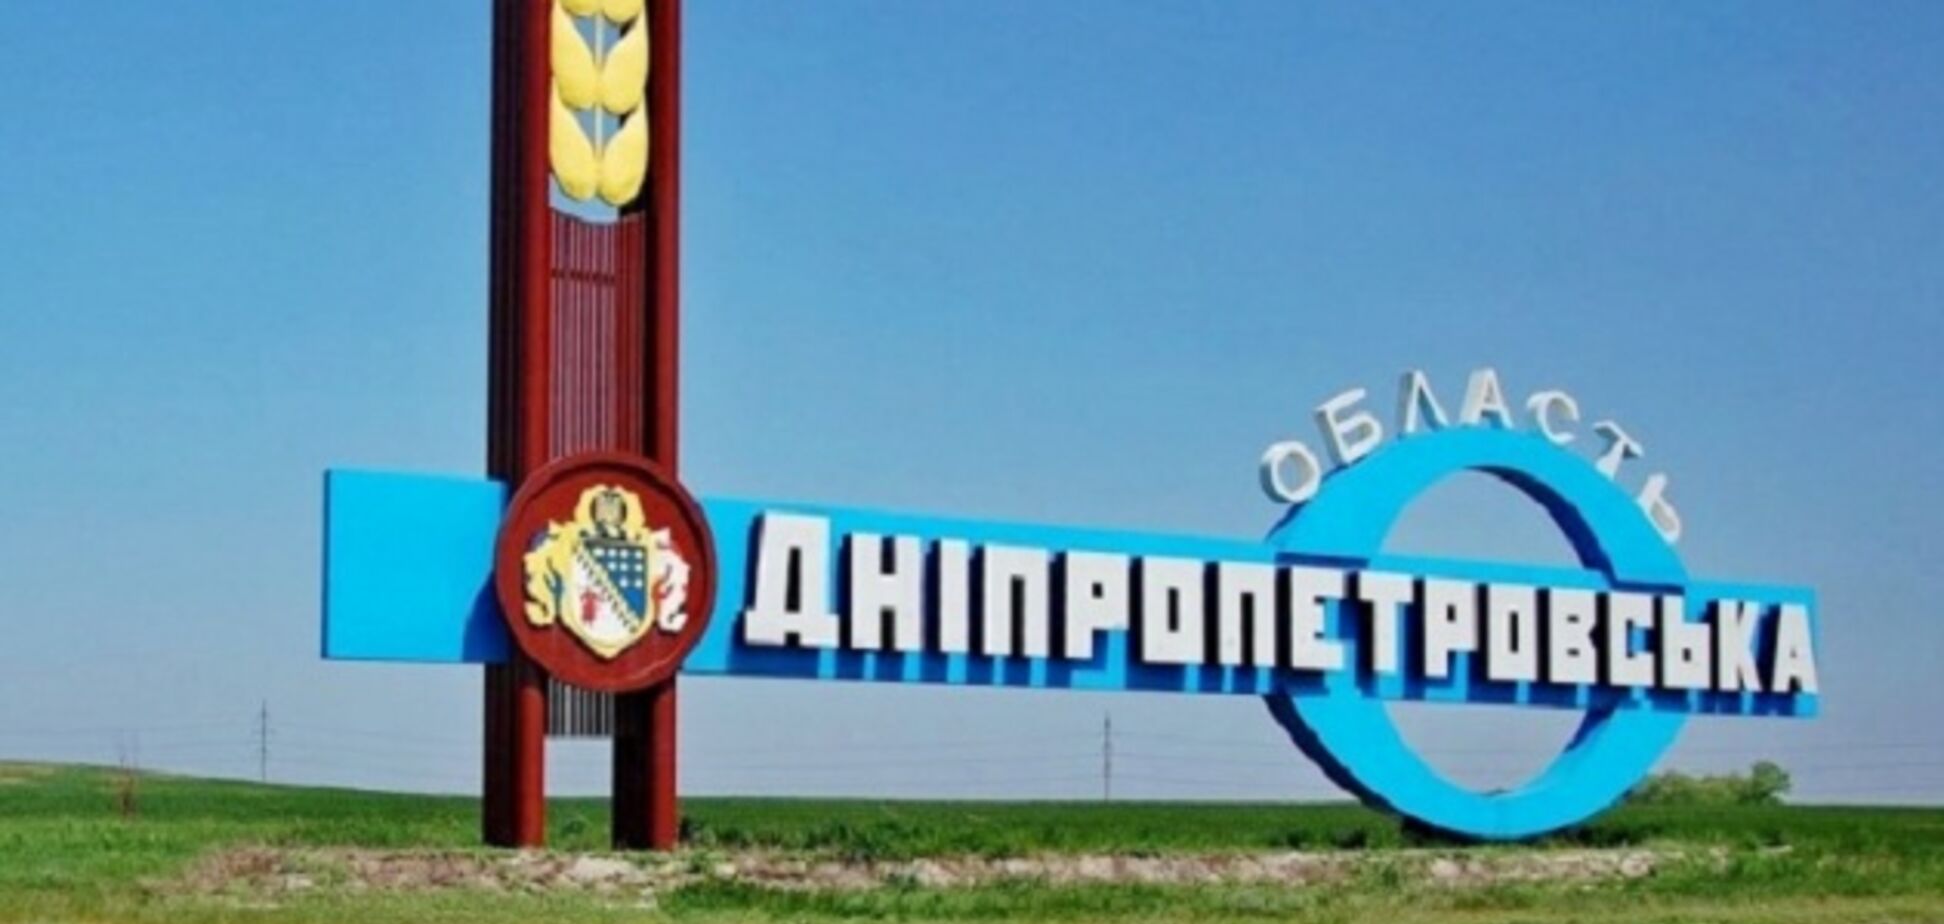 Днепропетровская область